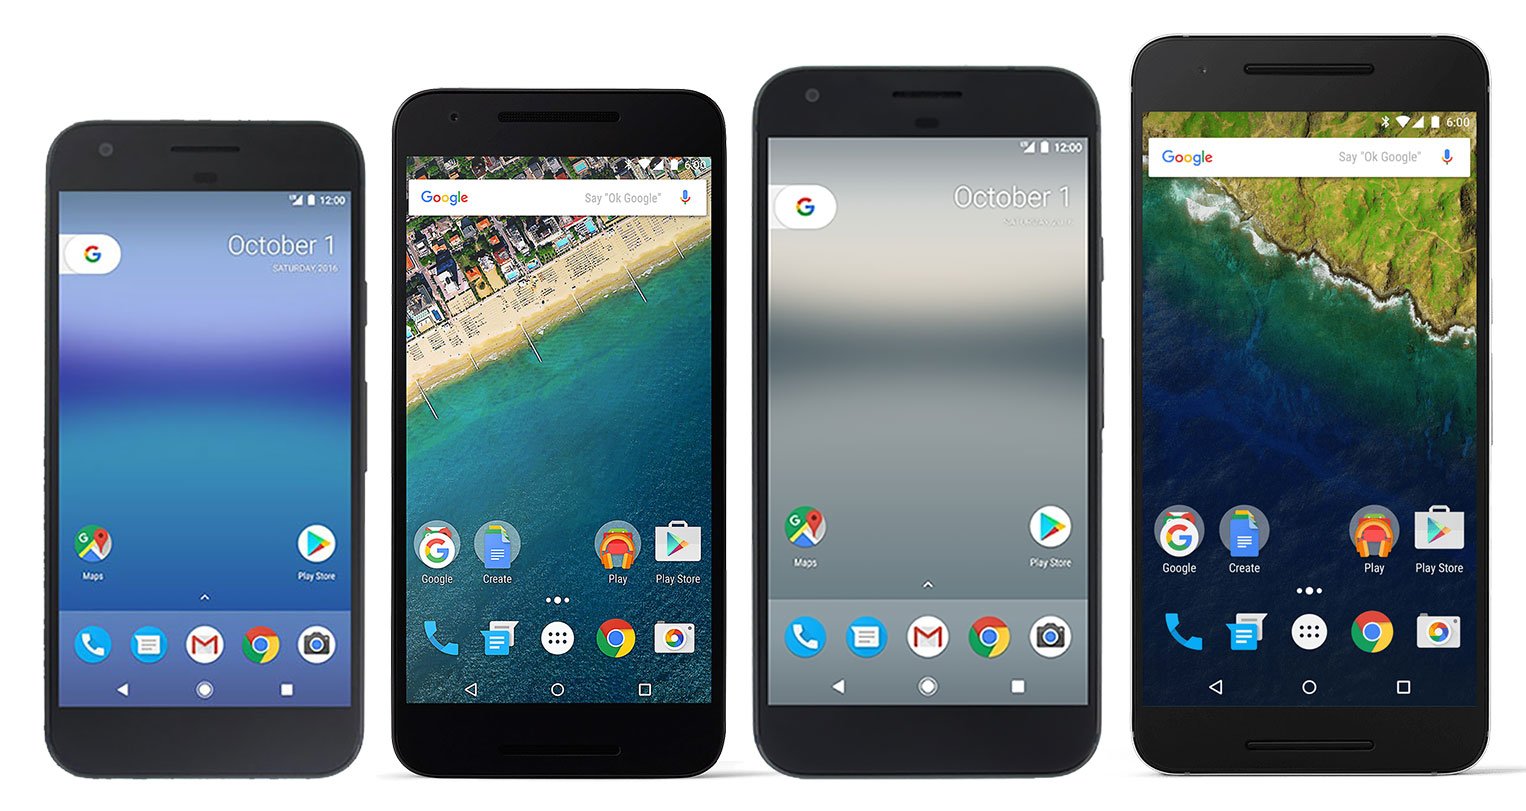 Pixel, Nexus 5X, Pixel XL, Nexus 6P